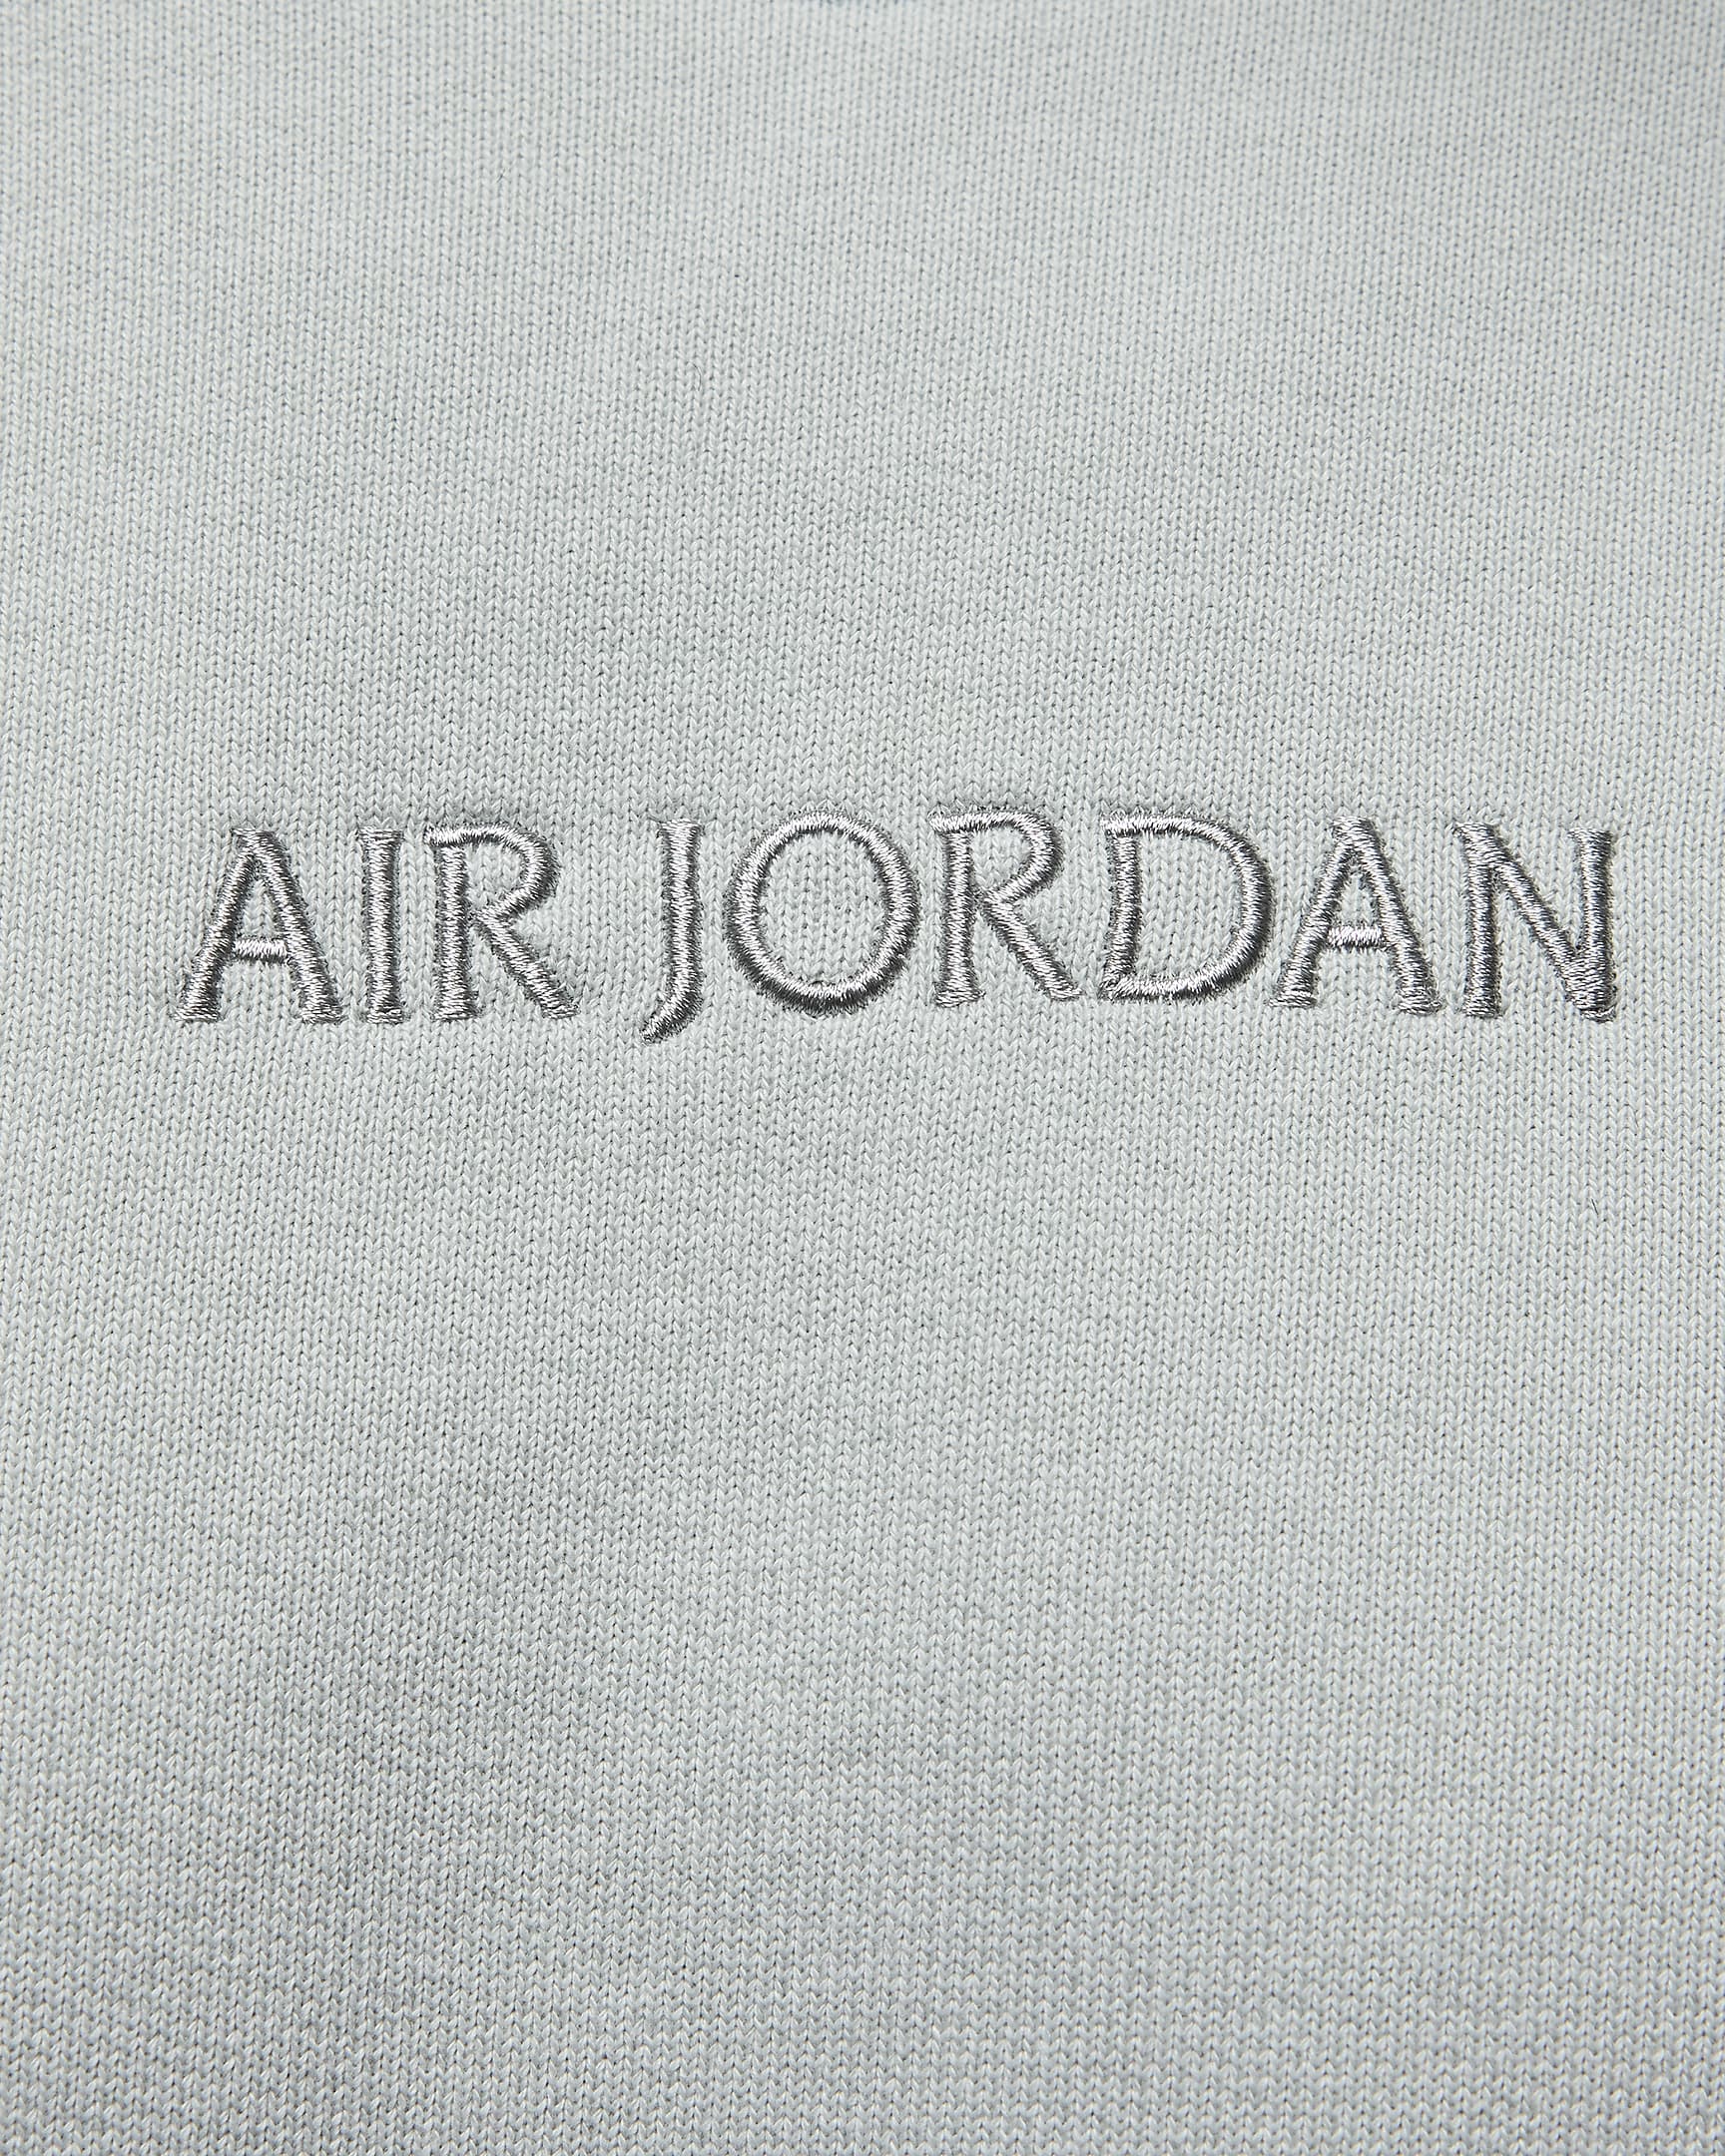 Air Jordan Wordmark Men's Fleece Crewneck Sweatshirt. Nike.com